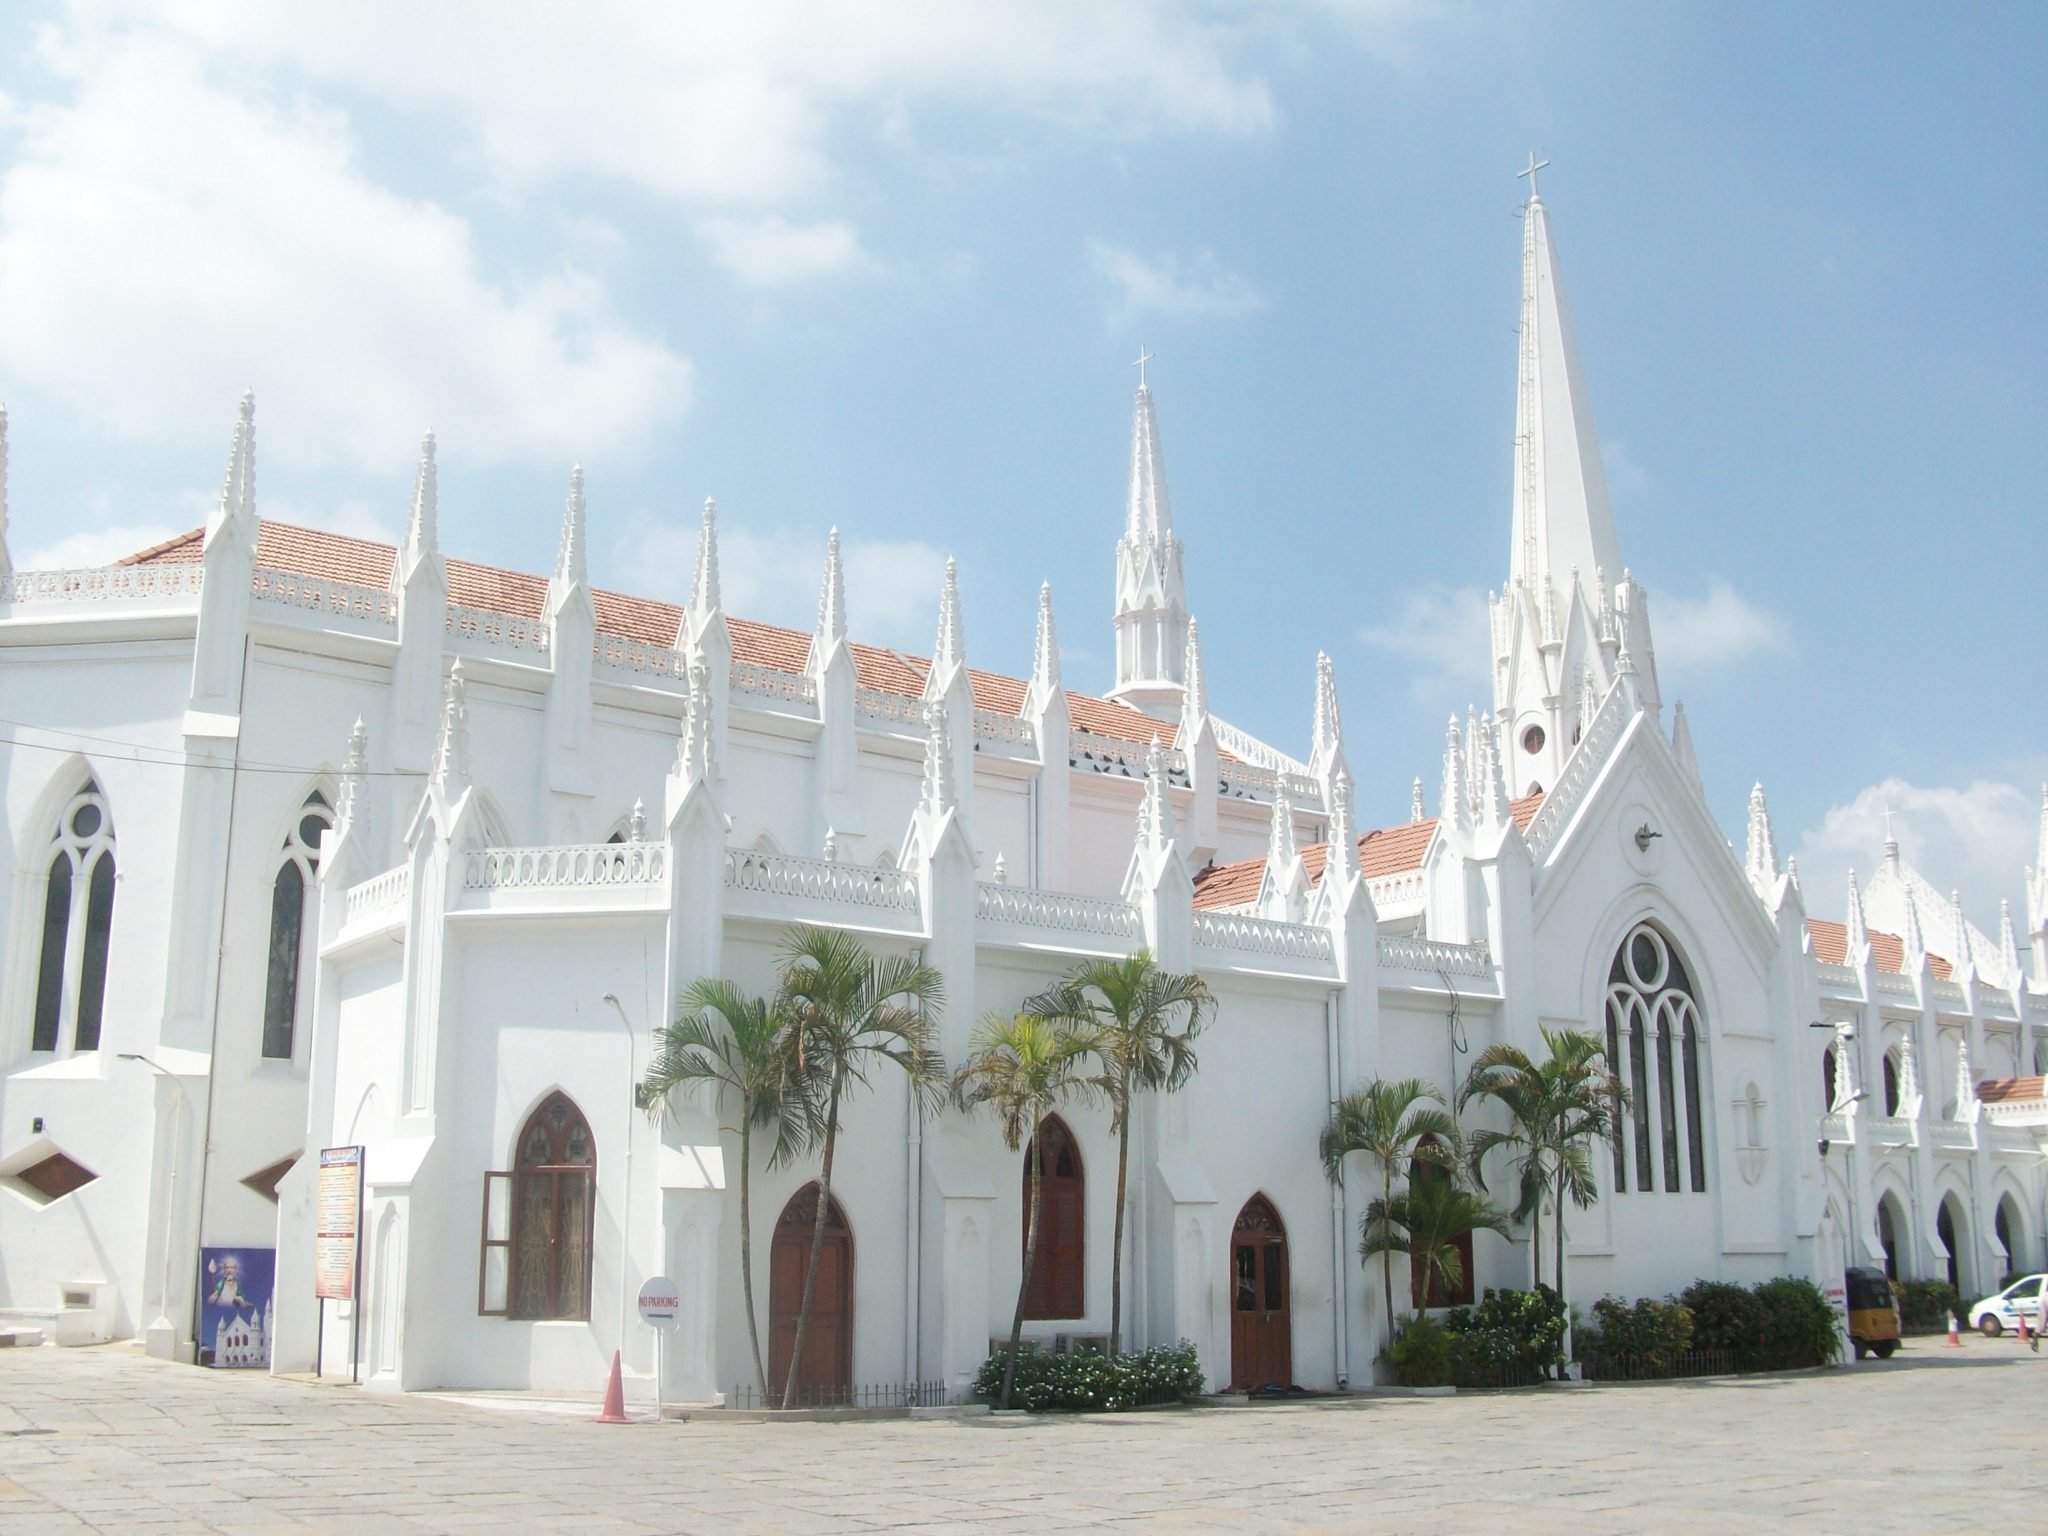 St. Thomas Cathedral Basilica, Chennai